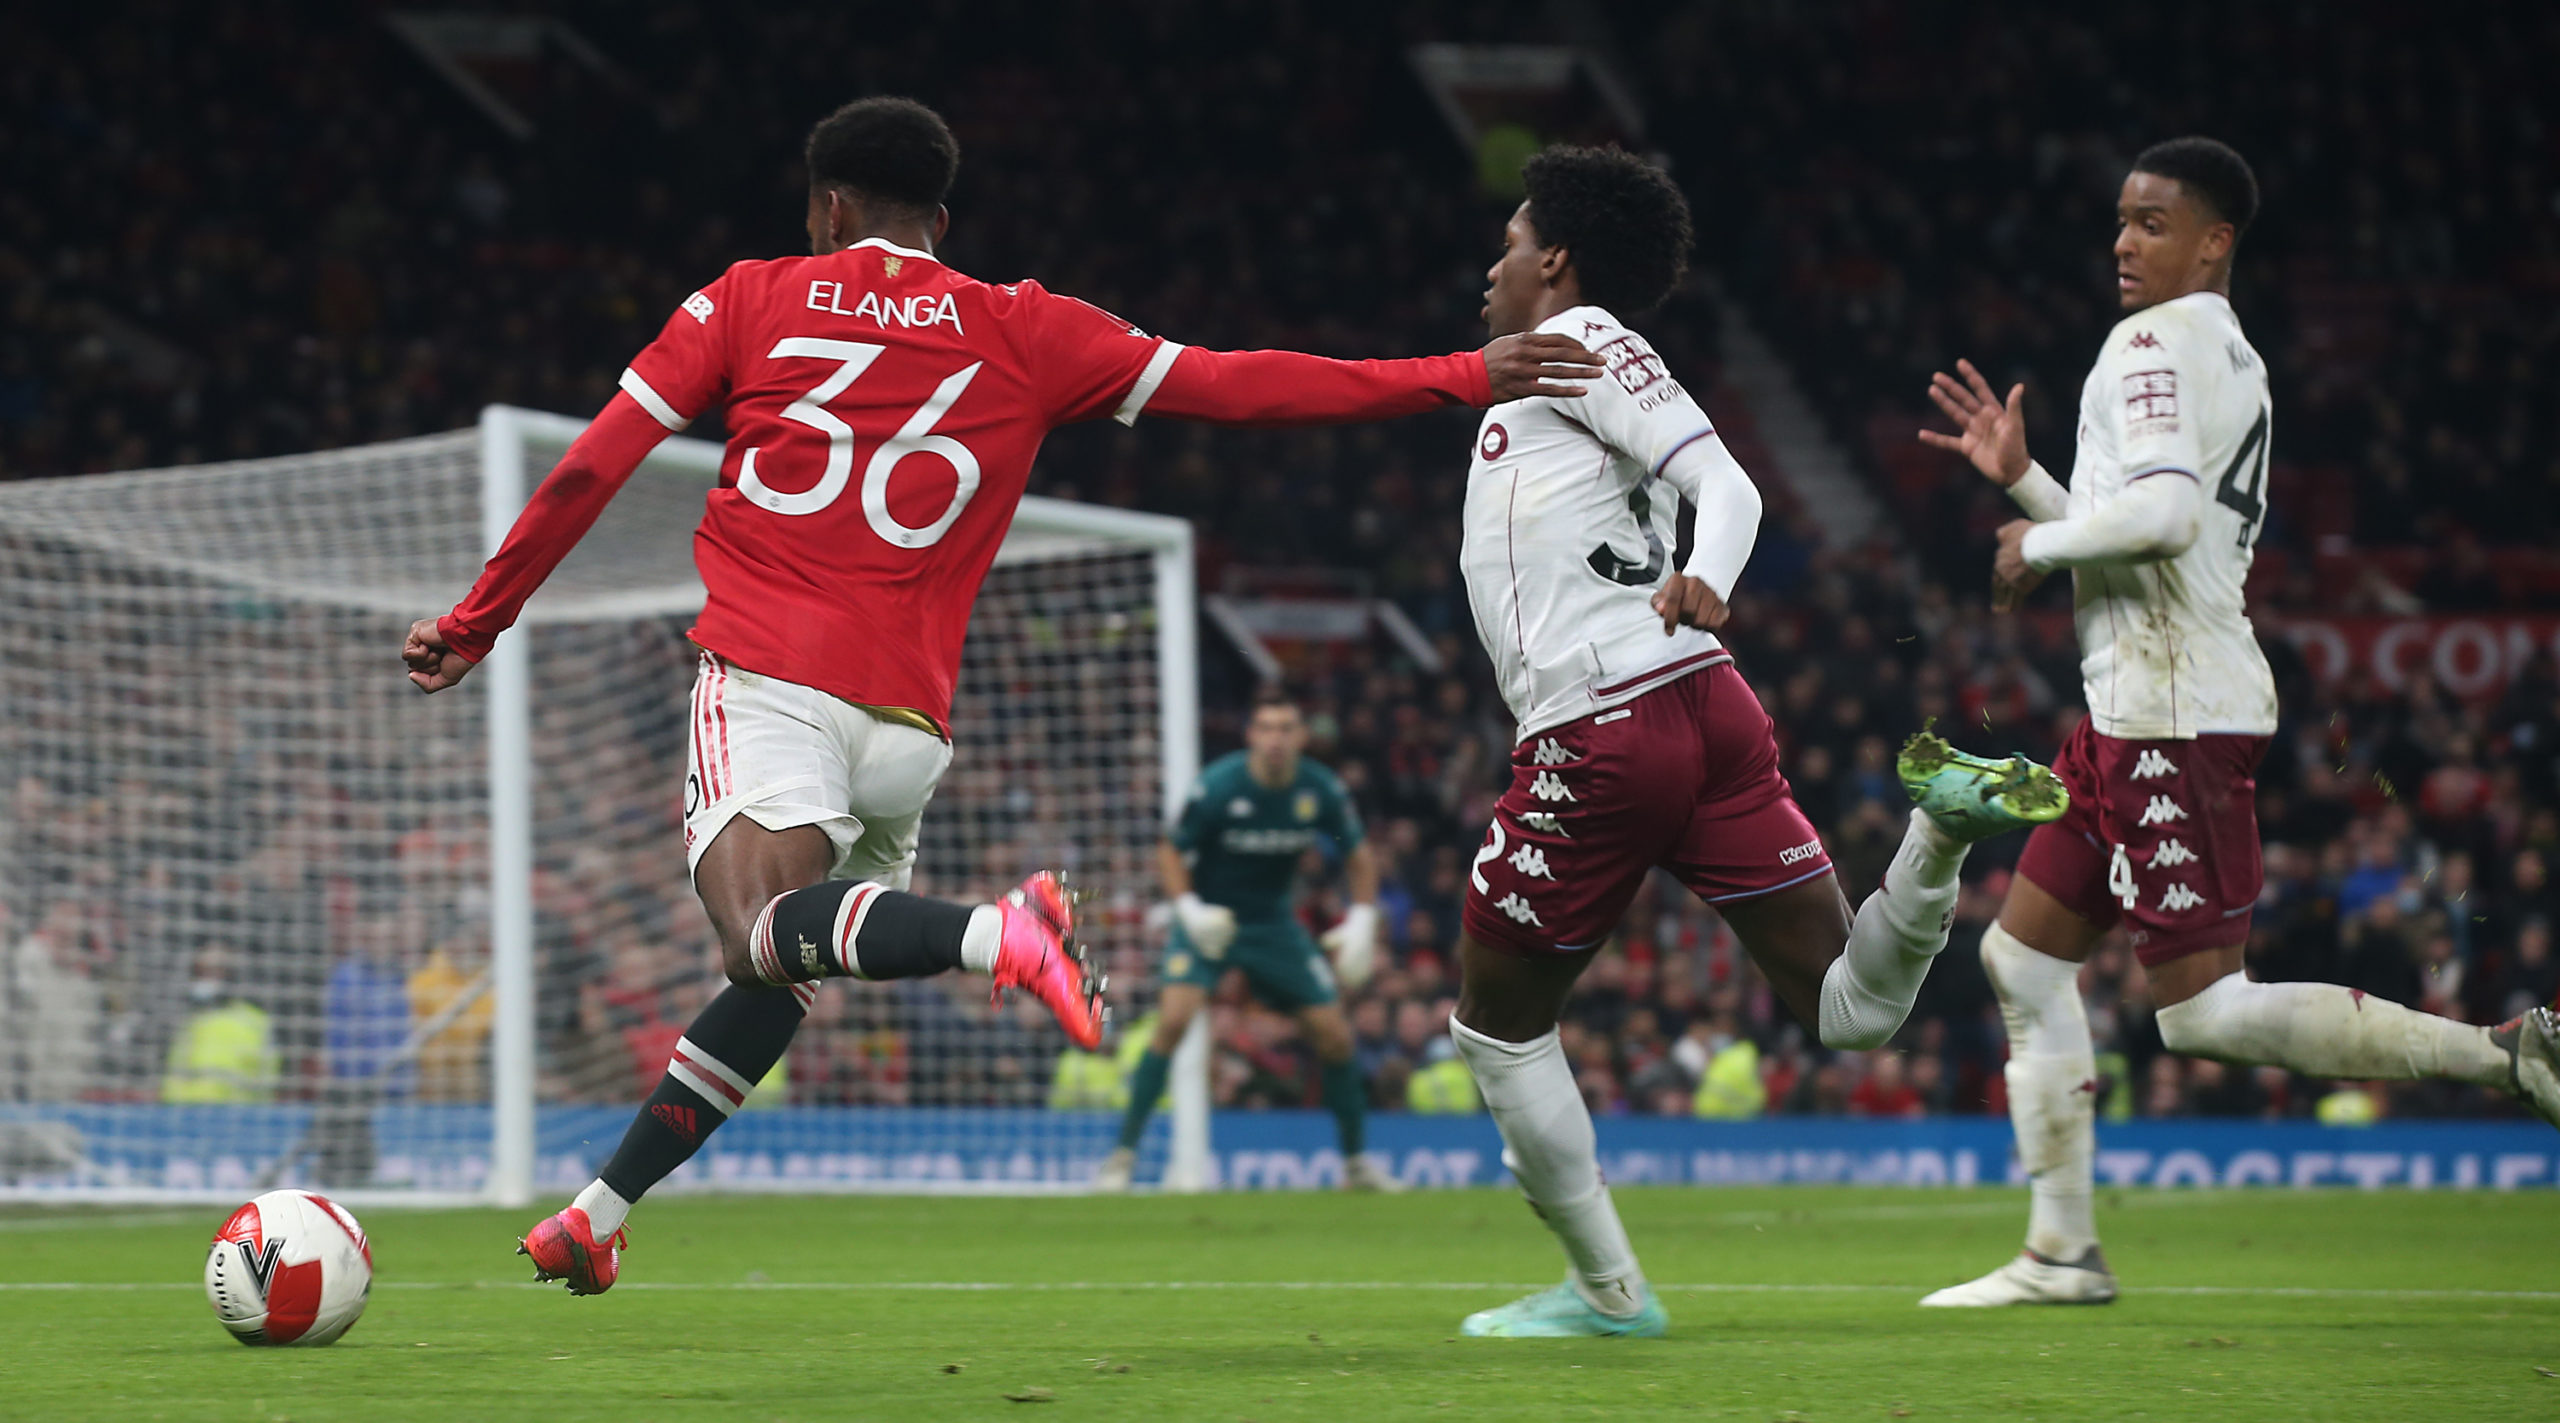 Manchester United fans enjoyed Anthony Elanga's cameo performance v Villa